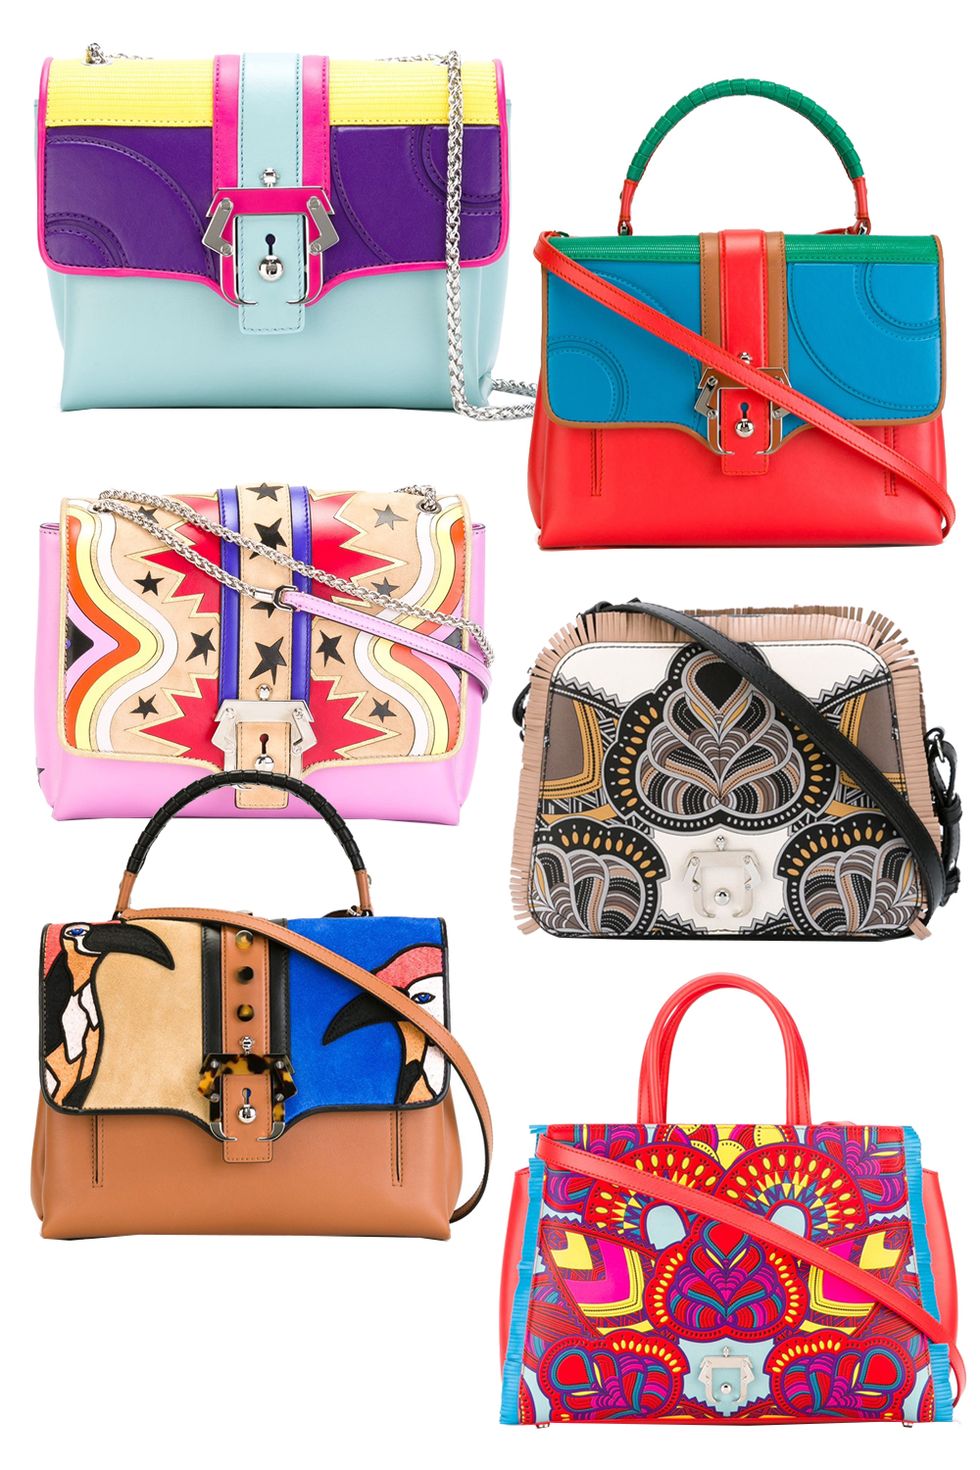 41 Best Bags 2016 - 8 Handbag Designers to Watch in 2016